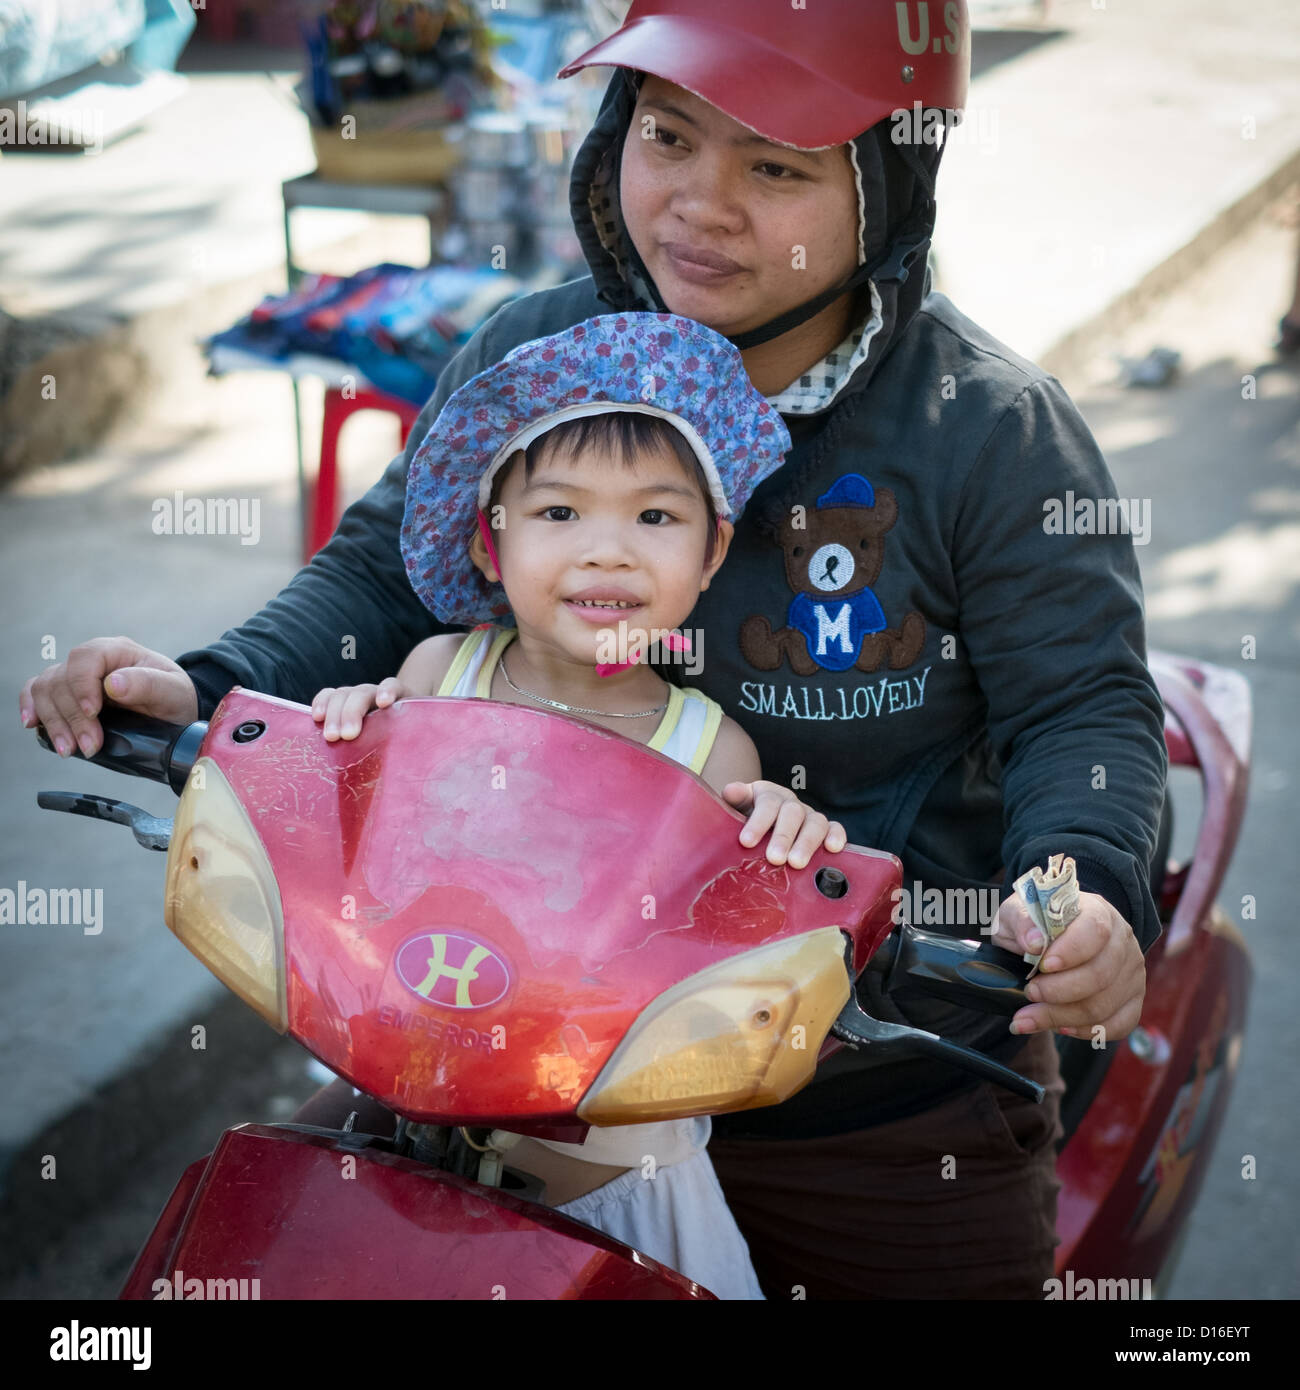 Les jeunes enfant vietnamien sur les mères lap sitting on scooter Banque D'Images